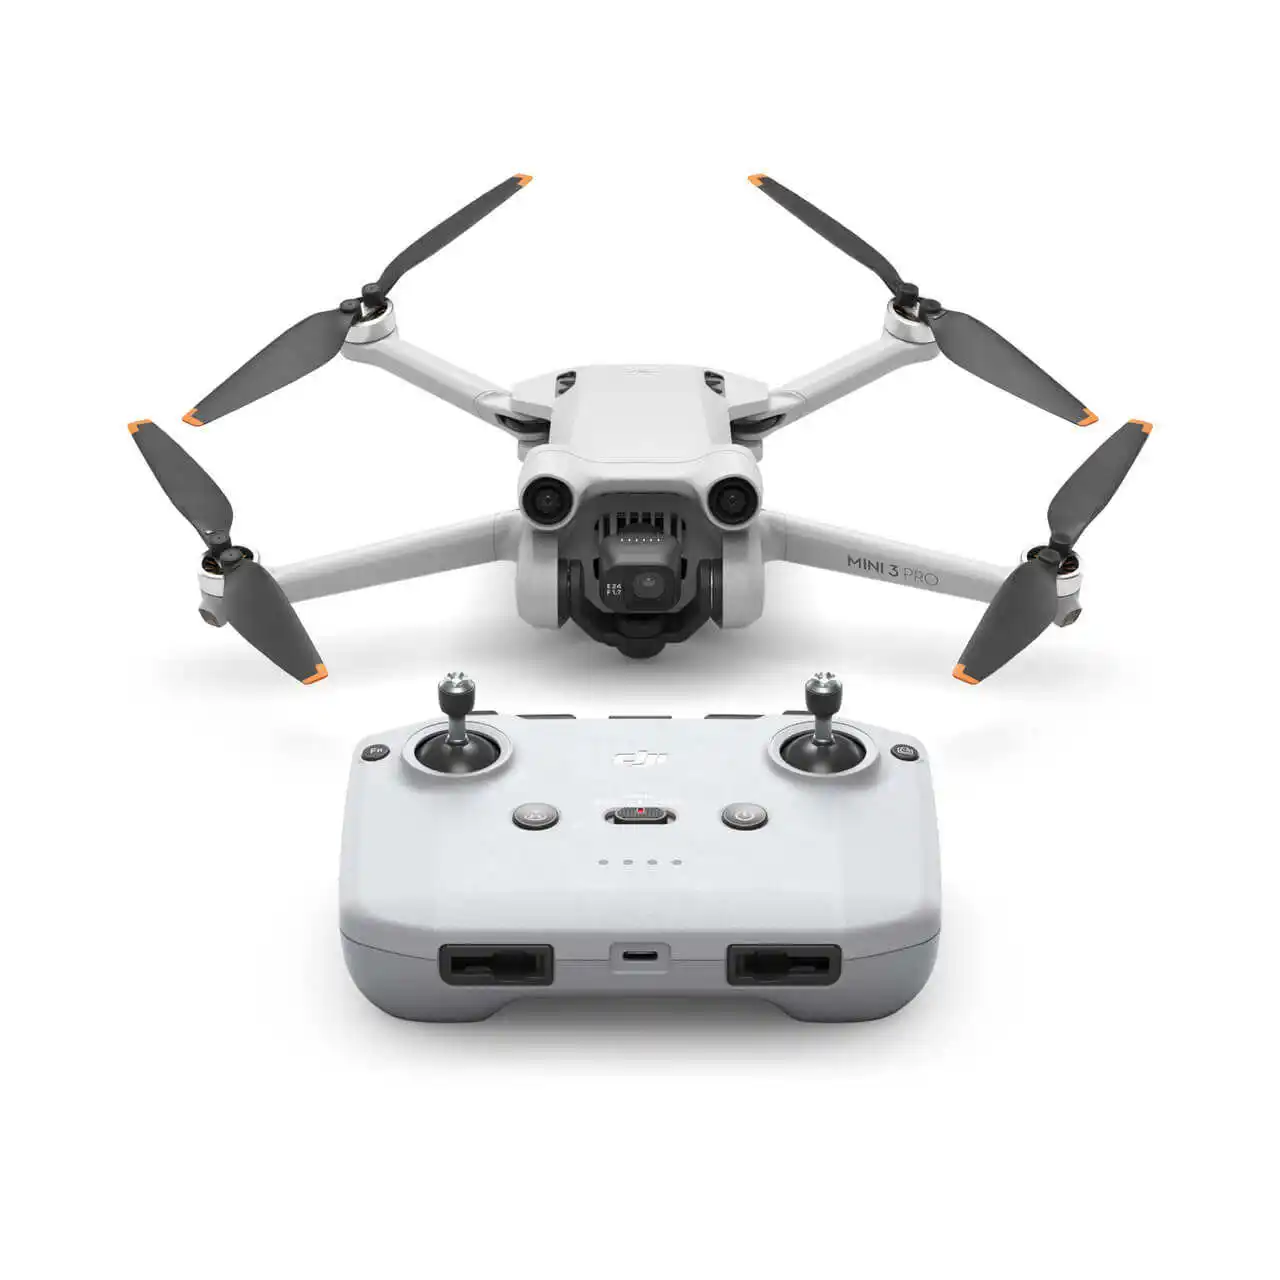 mini 3 pro rc-n1 Fast D2023 Original DJI Mini 3 Pro drone with 4K HD Camera 47 Mins Fly Time,Professional image transmission12km RC dista